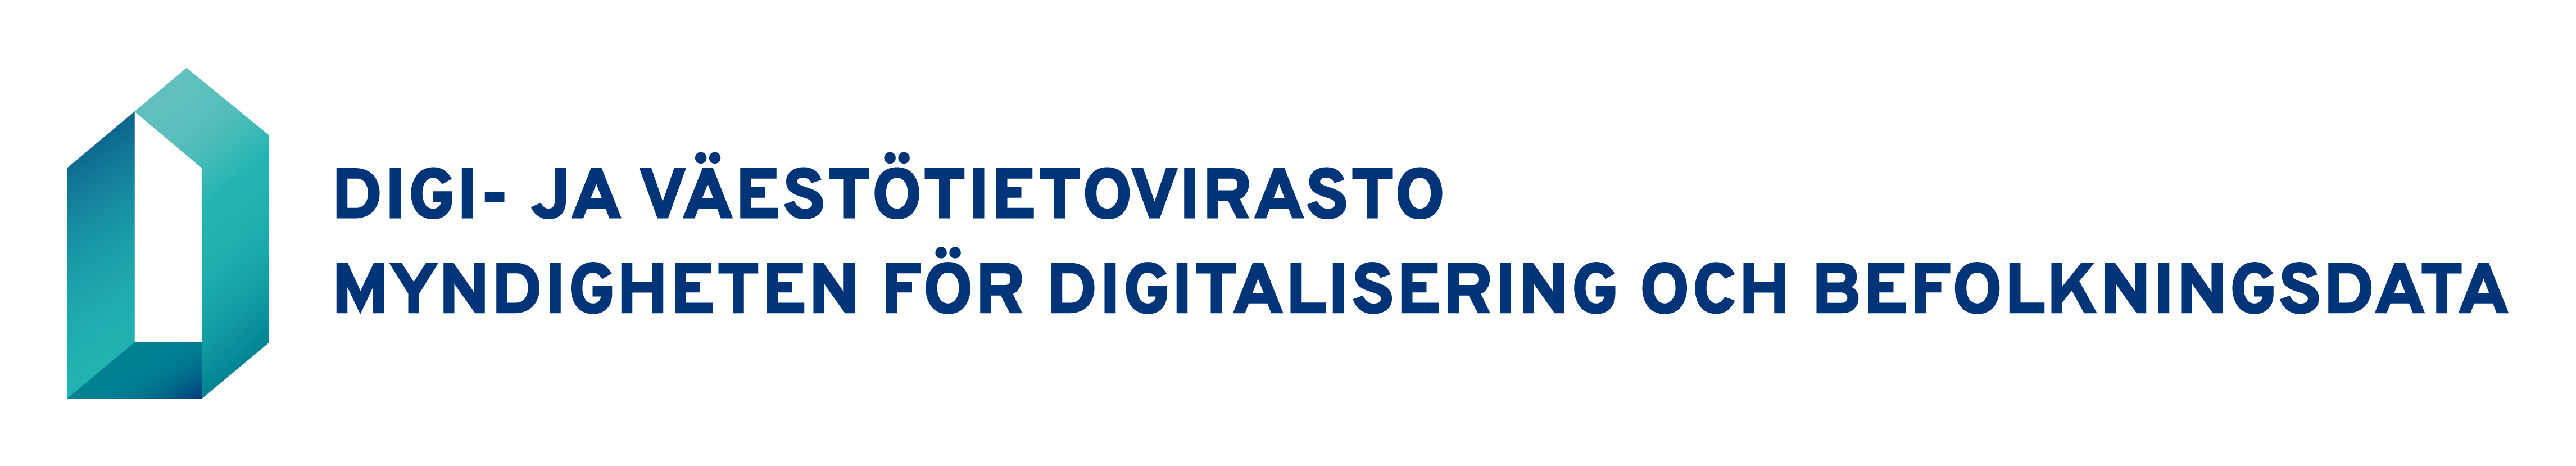 Logotyp: Myndigheten för digitalisering och befolkningsdata. Tvåspråkig logotyp: finska-svenska